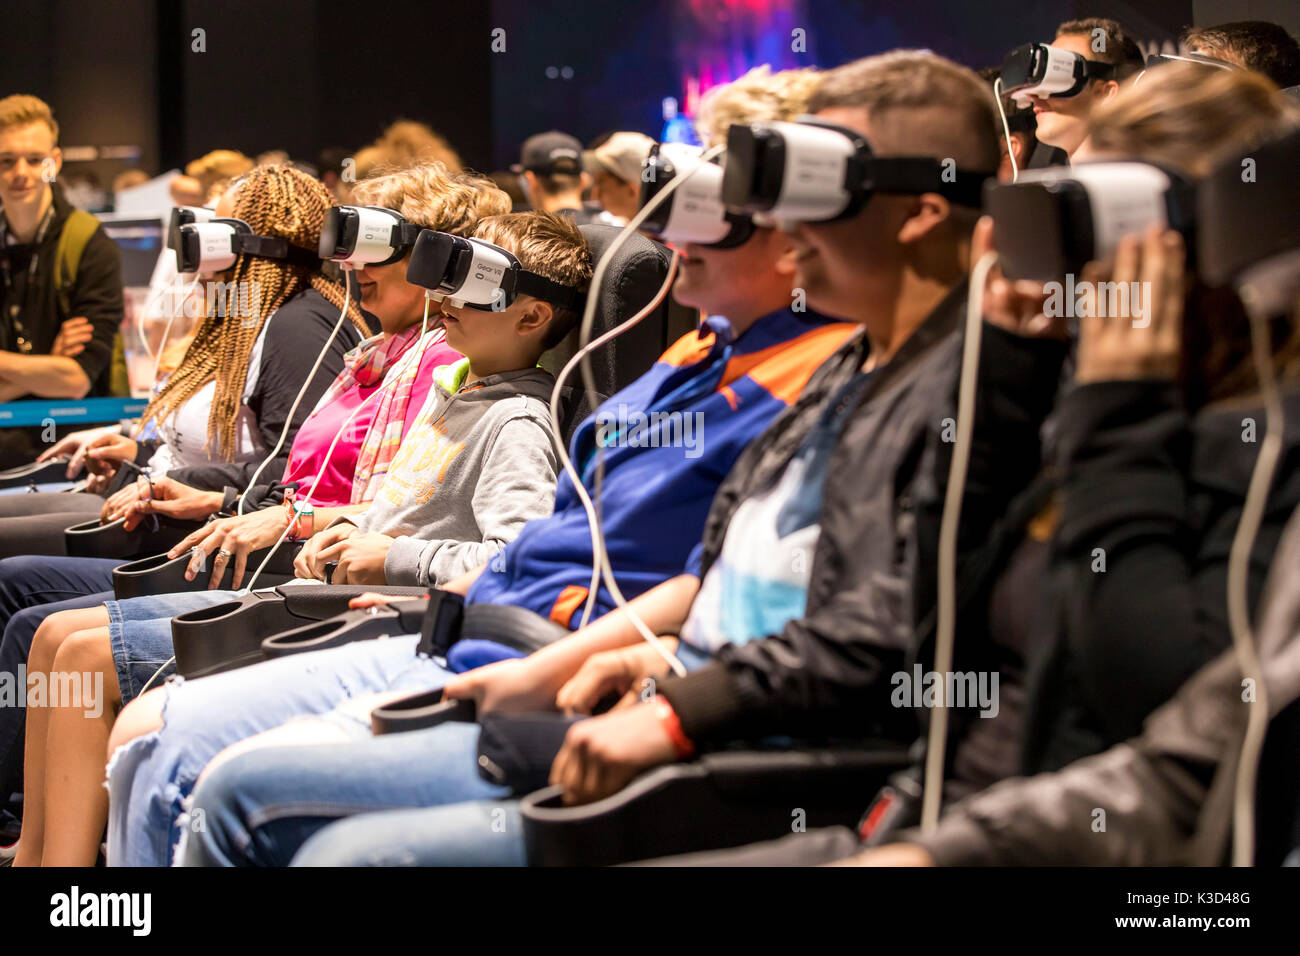 La gamescom, le plus grand salon de jeux vidéo et informatiques, à Cologne, en Allemagne, les jeux de réalité virtuelle, l'utilisation des visiteurs casque de réalité virtuelle Banque D'Images